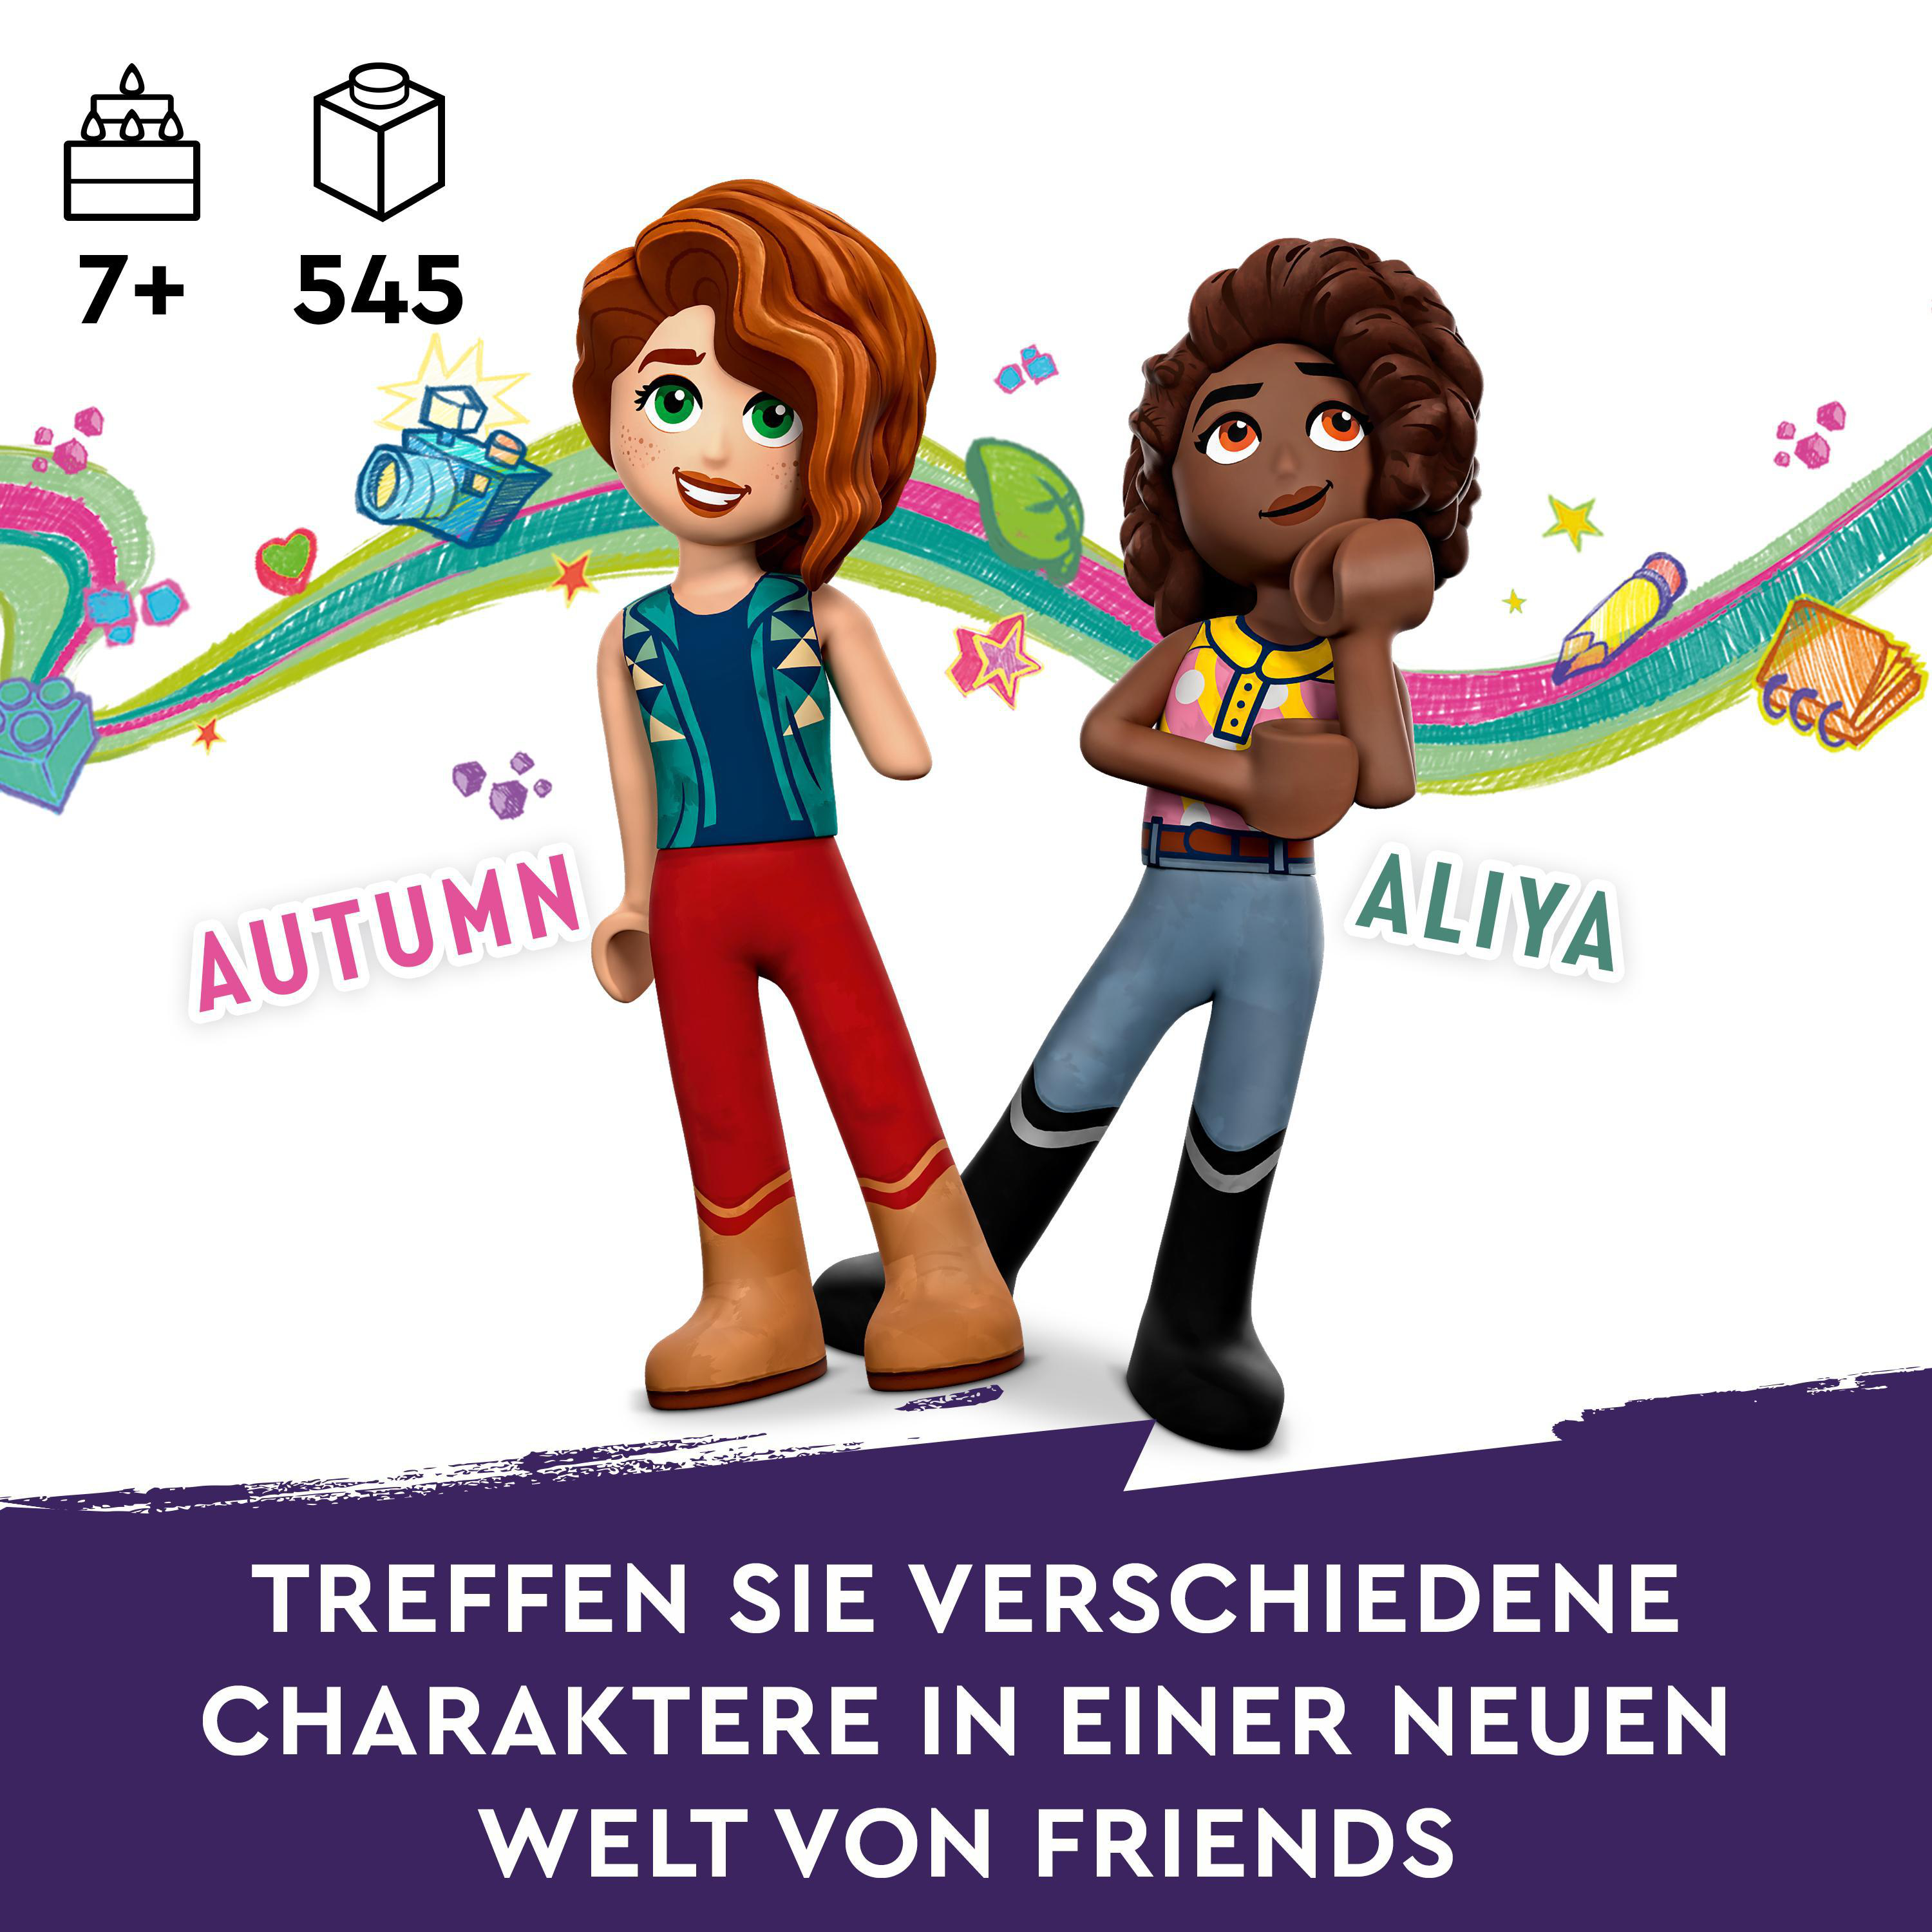 Reitstall Bausatz, Mehrfarbig Friends 41745 LEGO Autumns